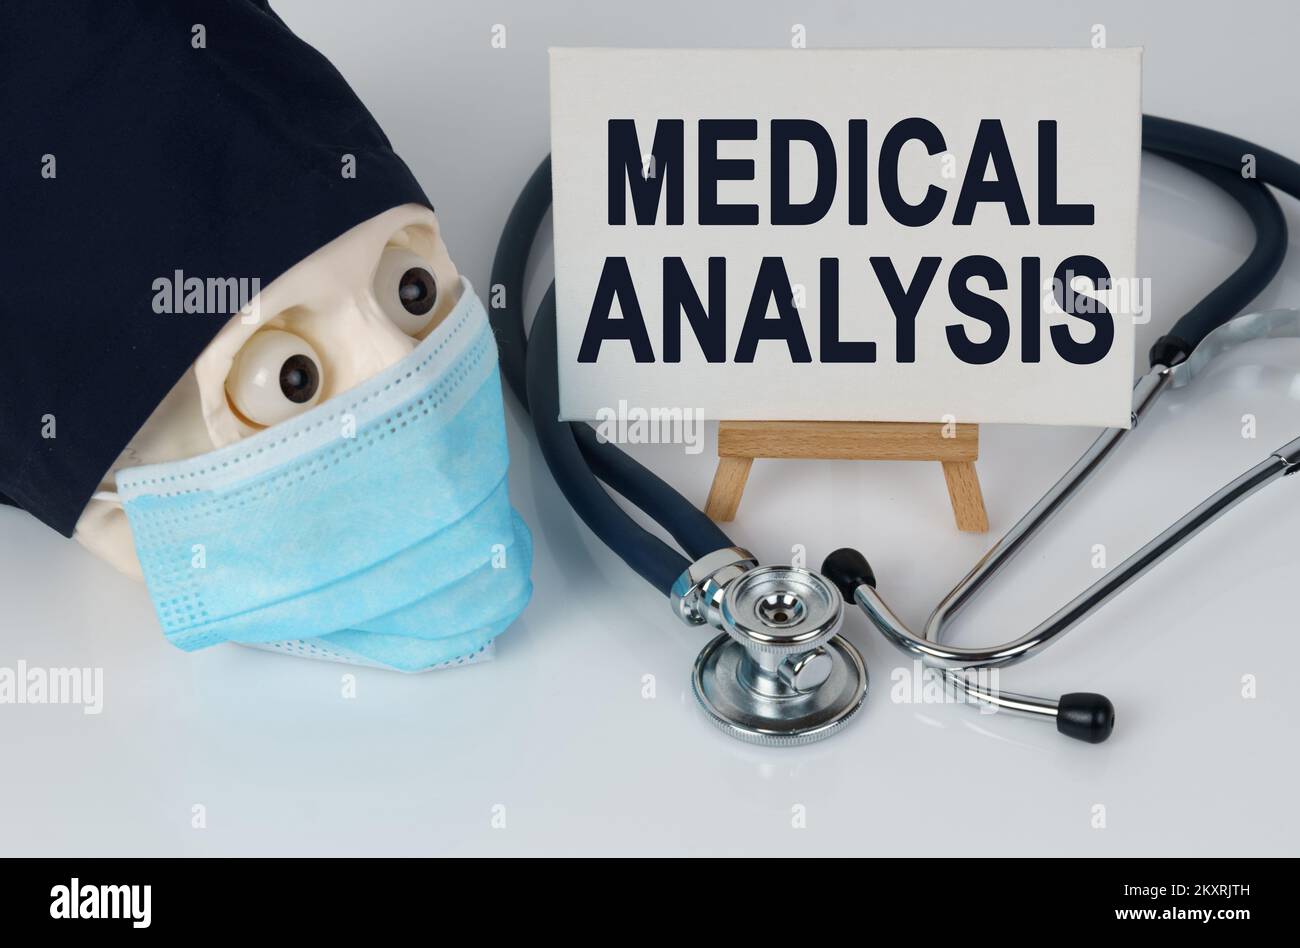 Medizin und Gesundheitskonzept. Schädel in Maske und Kappe, Stethoskop und Staffelei mit Leinwand, auf der es geschrieben ist - MEDIZINISCHE ANALYSE Stockfoto